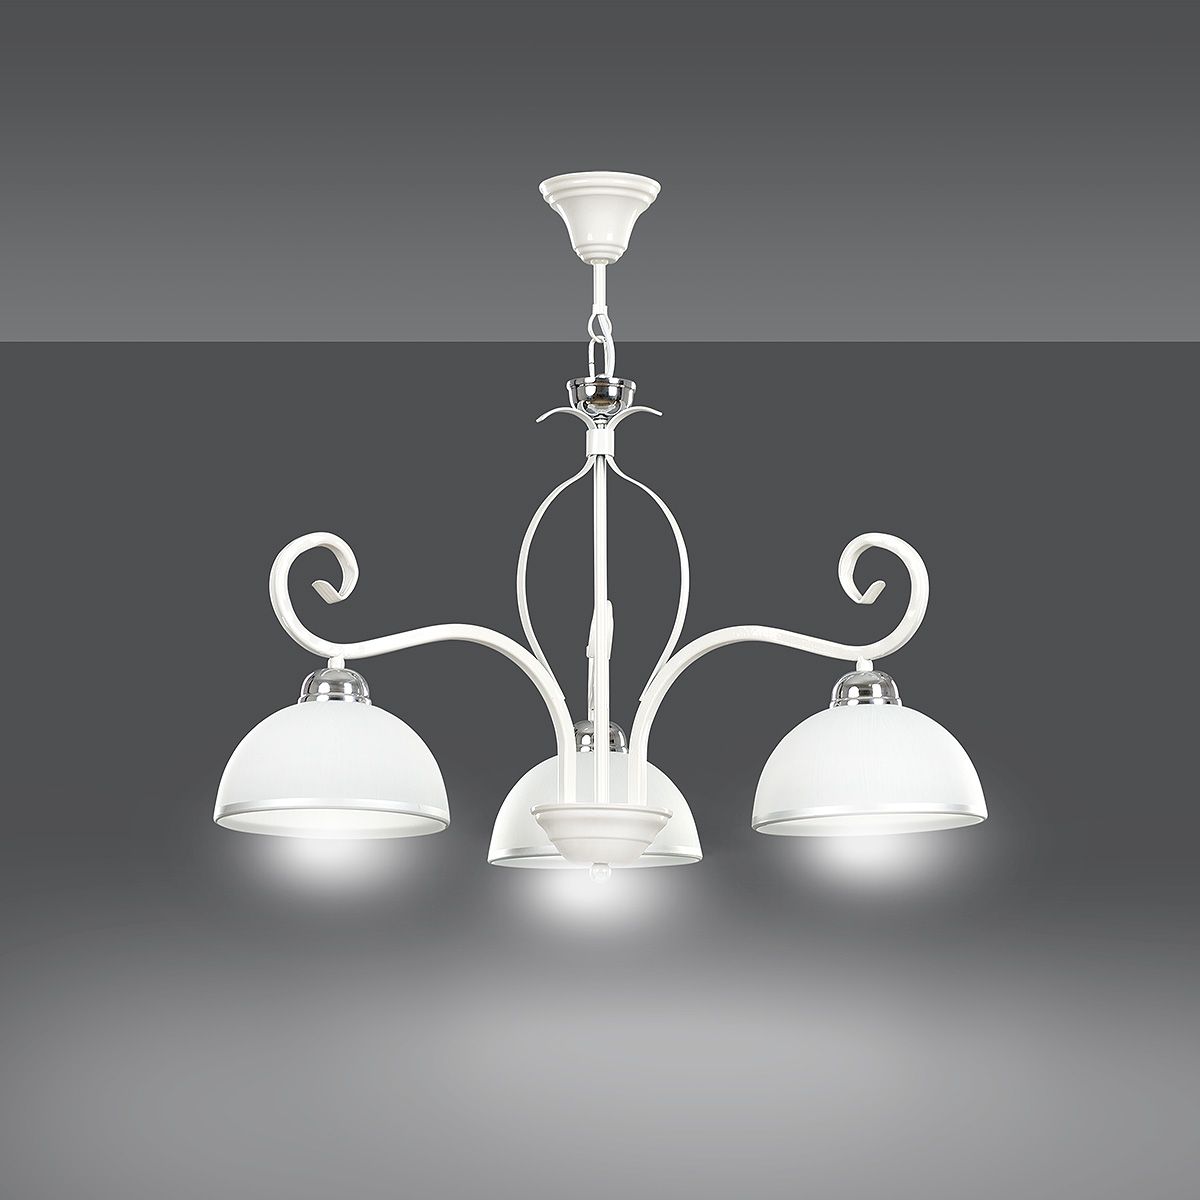 Deckenlampe Weiß Metall Glasschirme 3-flammig E27